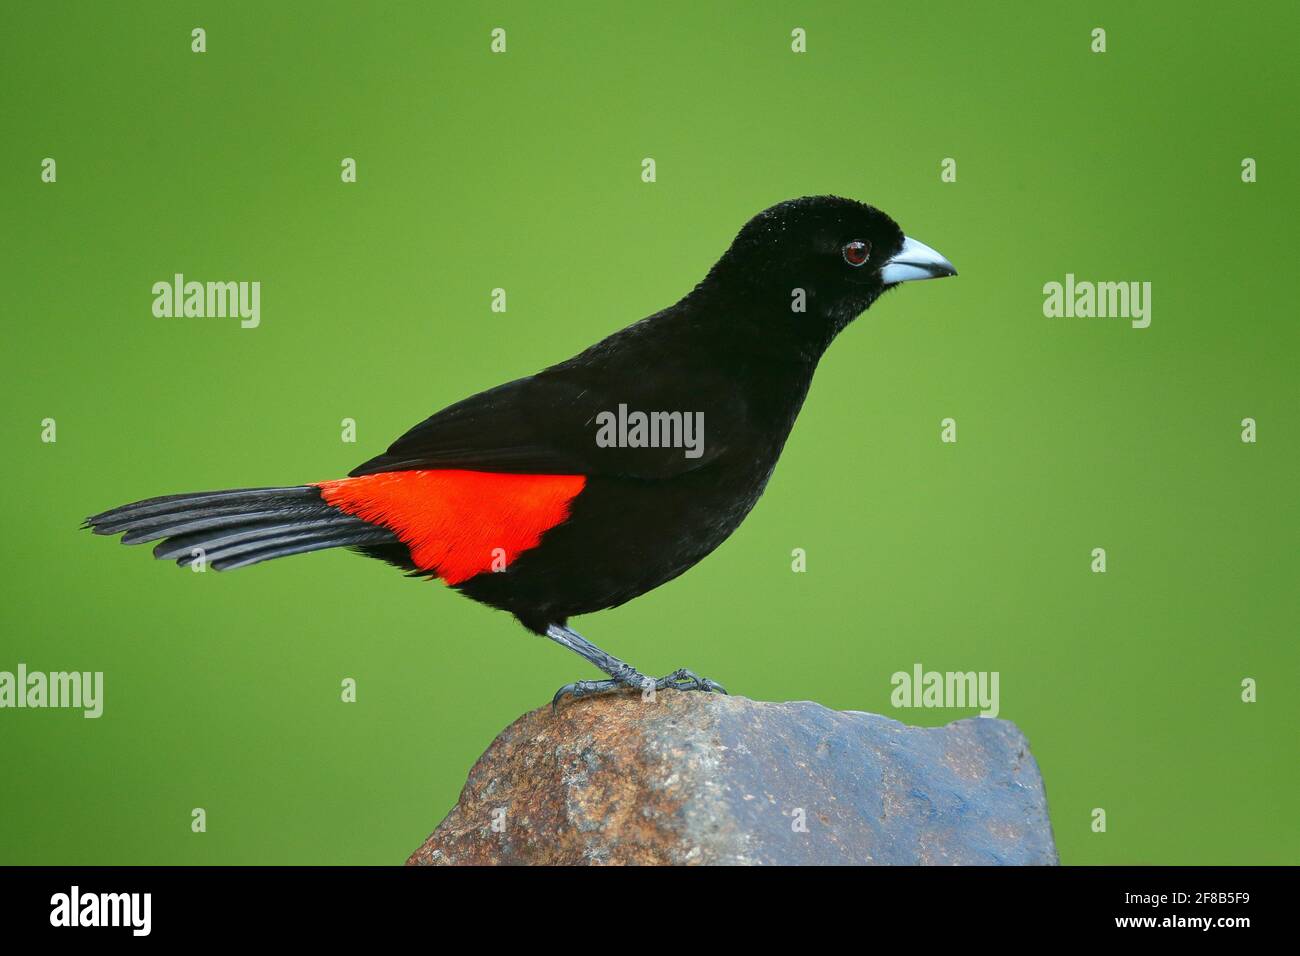 Tanager, Ramphocelus passerinii, uccello rosso e nero tropicale esotico del Costa Rica, in habitat naturale verde della foresta. Canzone nera e rossa Foto Stock